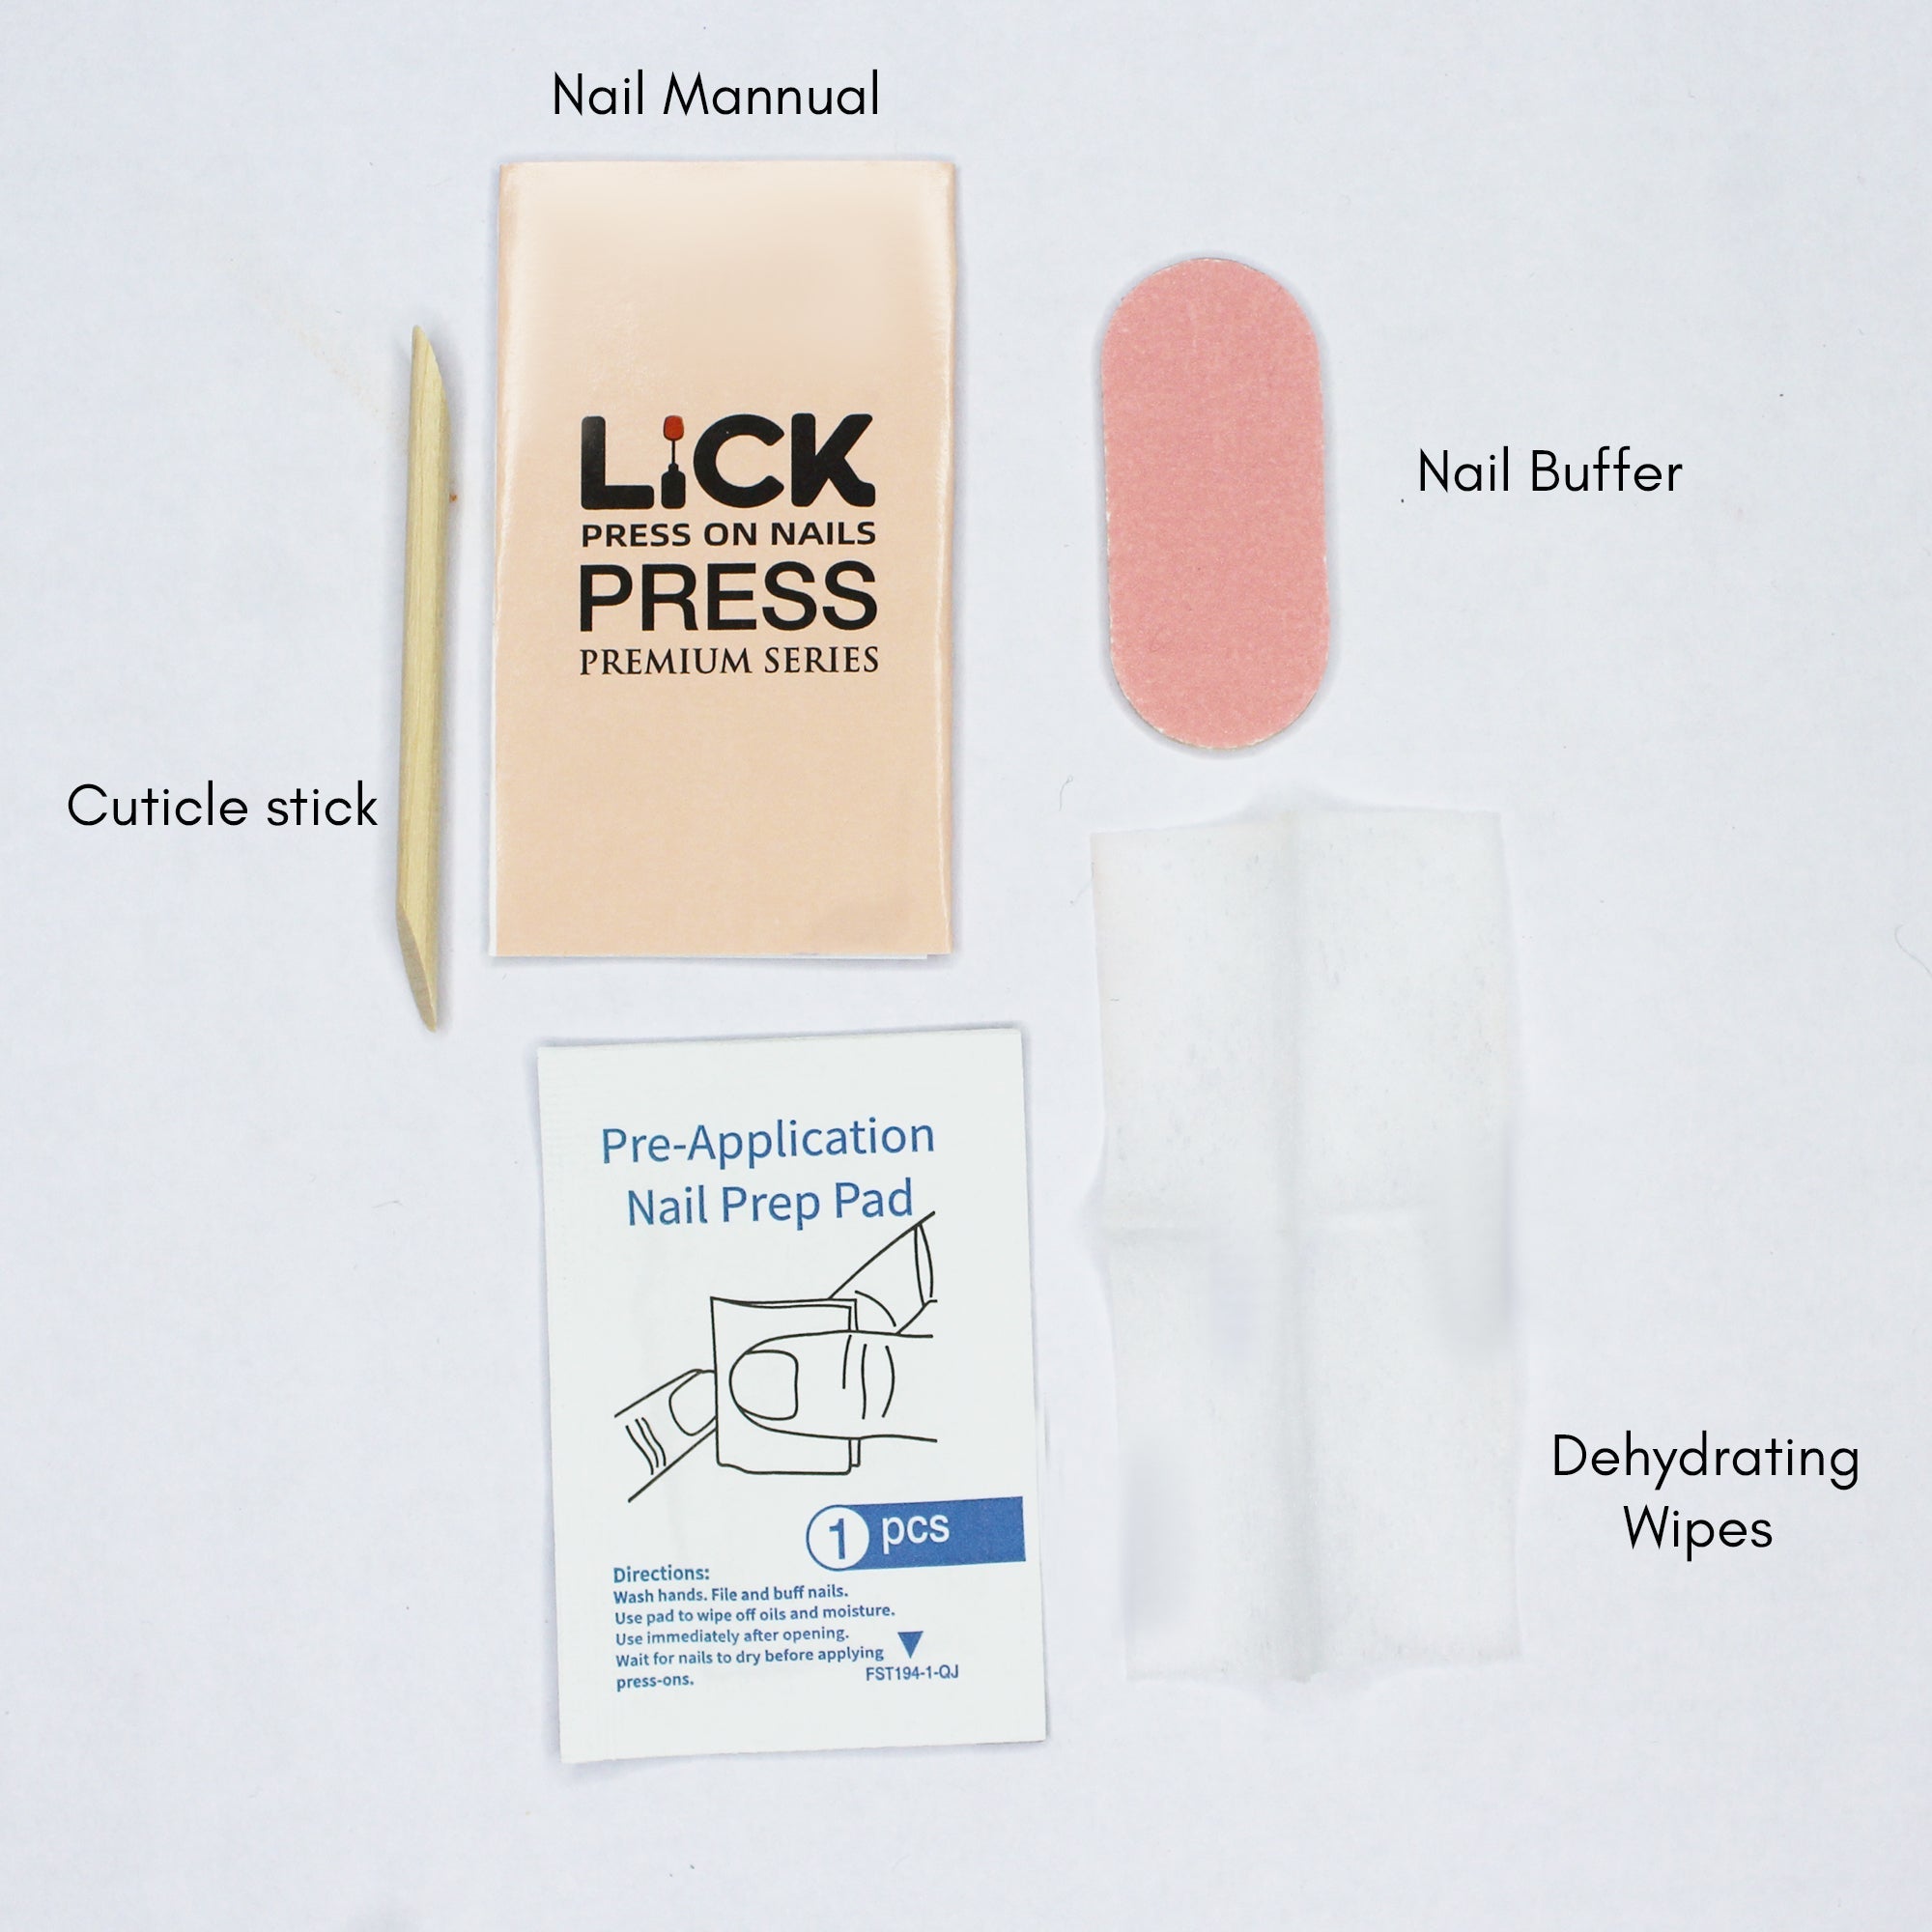 Lick Nail Matt Finish Square Shape Press On Nails Pack Of 30 Pcs